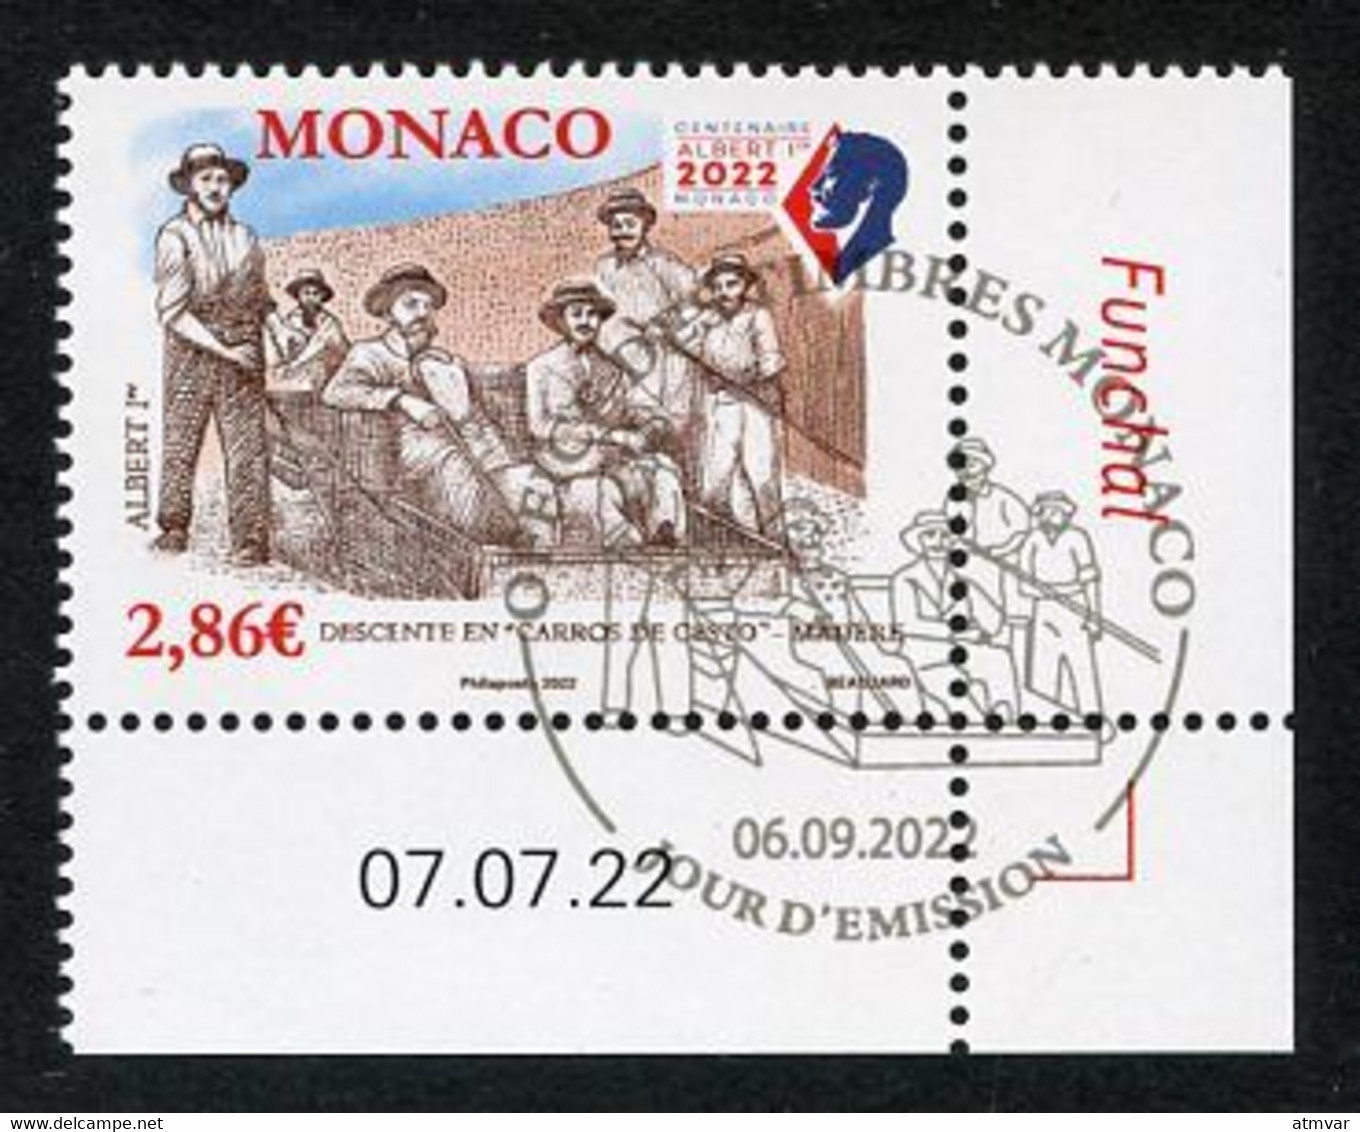 MONACO (2022) Albert 1er Madère Madeira Funchal, Descente En Carros De Cesto - Coin Daté - Gebruikt